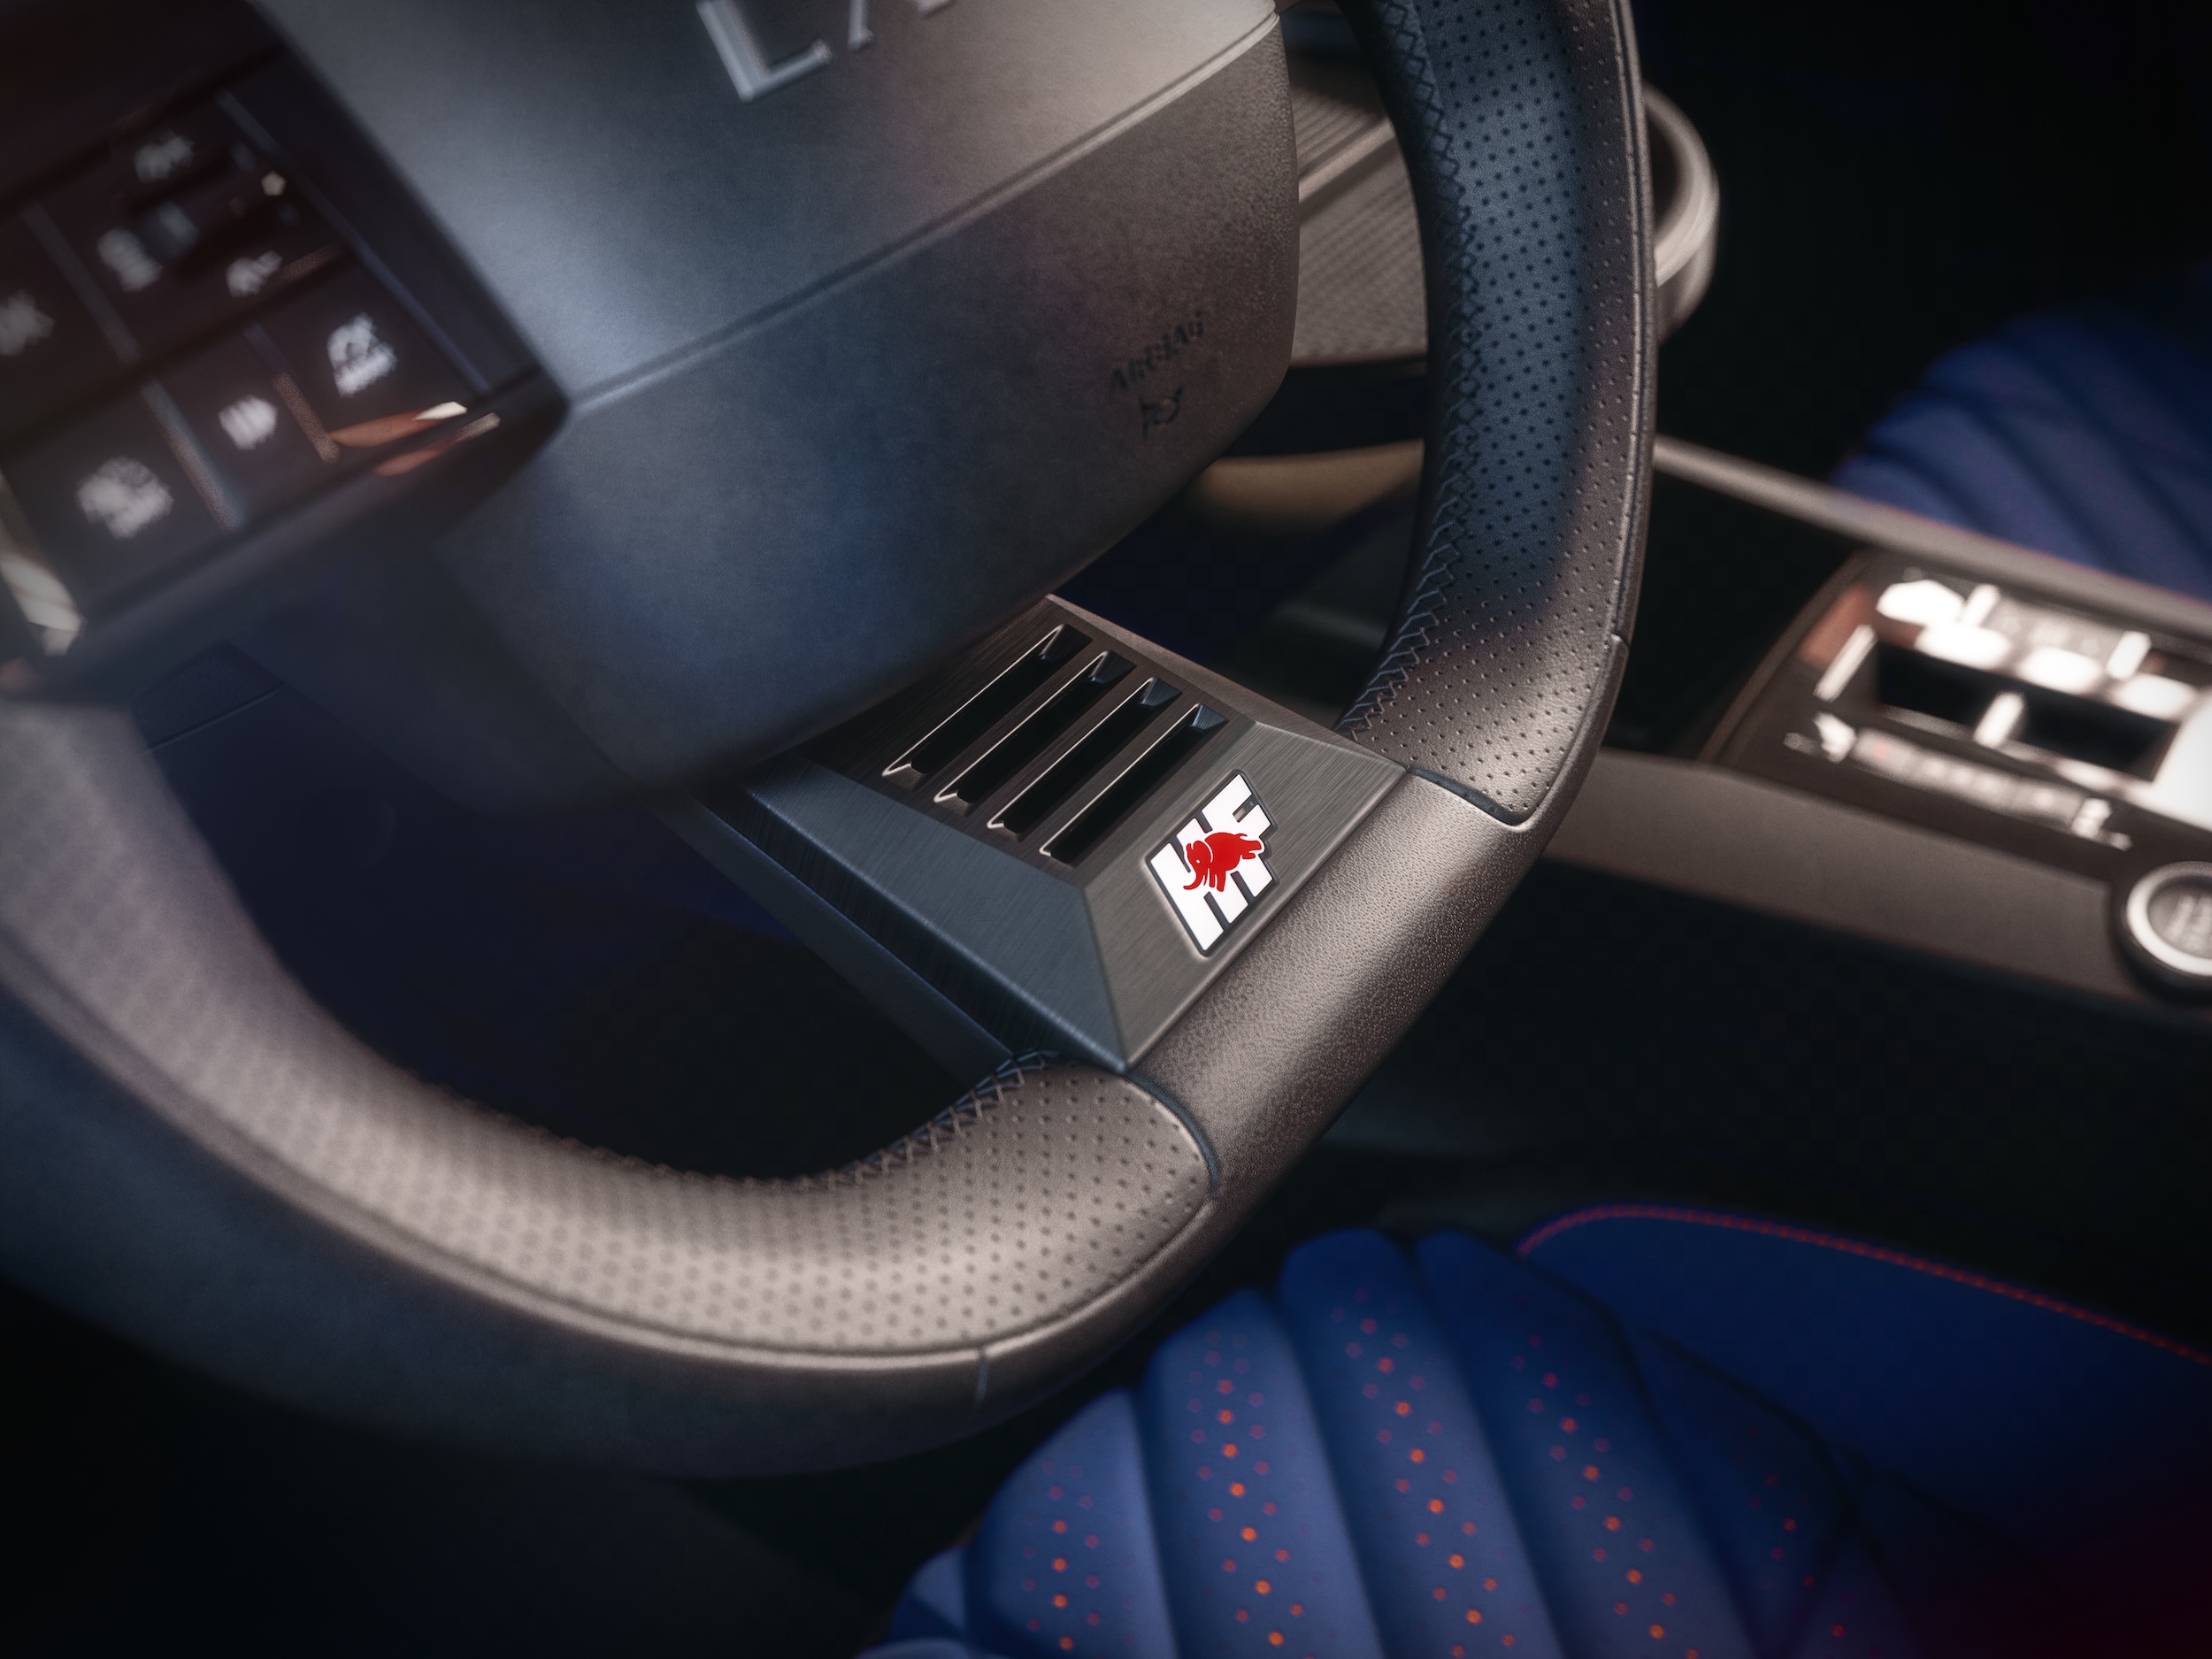 Lancia Ypsilon HF steering wheel detail